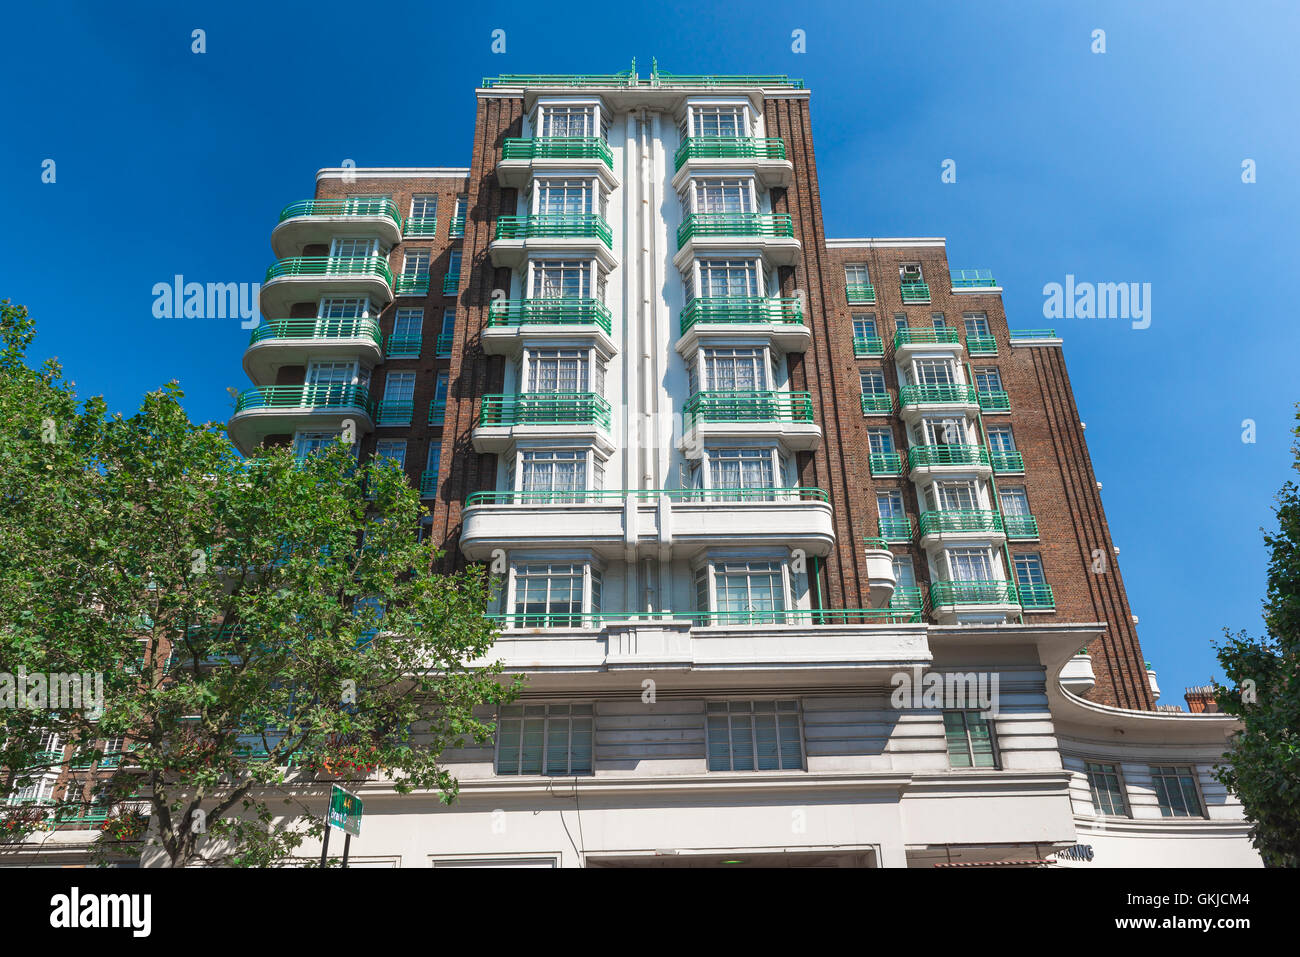 Années 20 Art Deco apartment building, Dorset House, Marylebone, Londres NW1 Banque D'Images